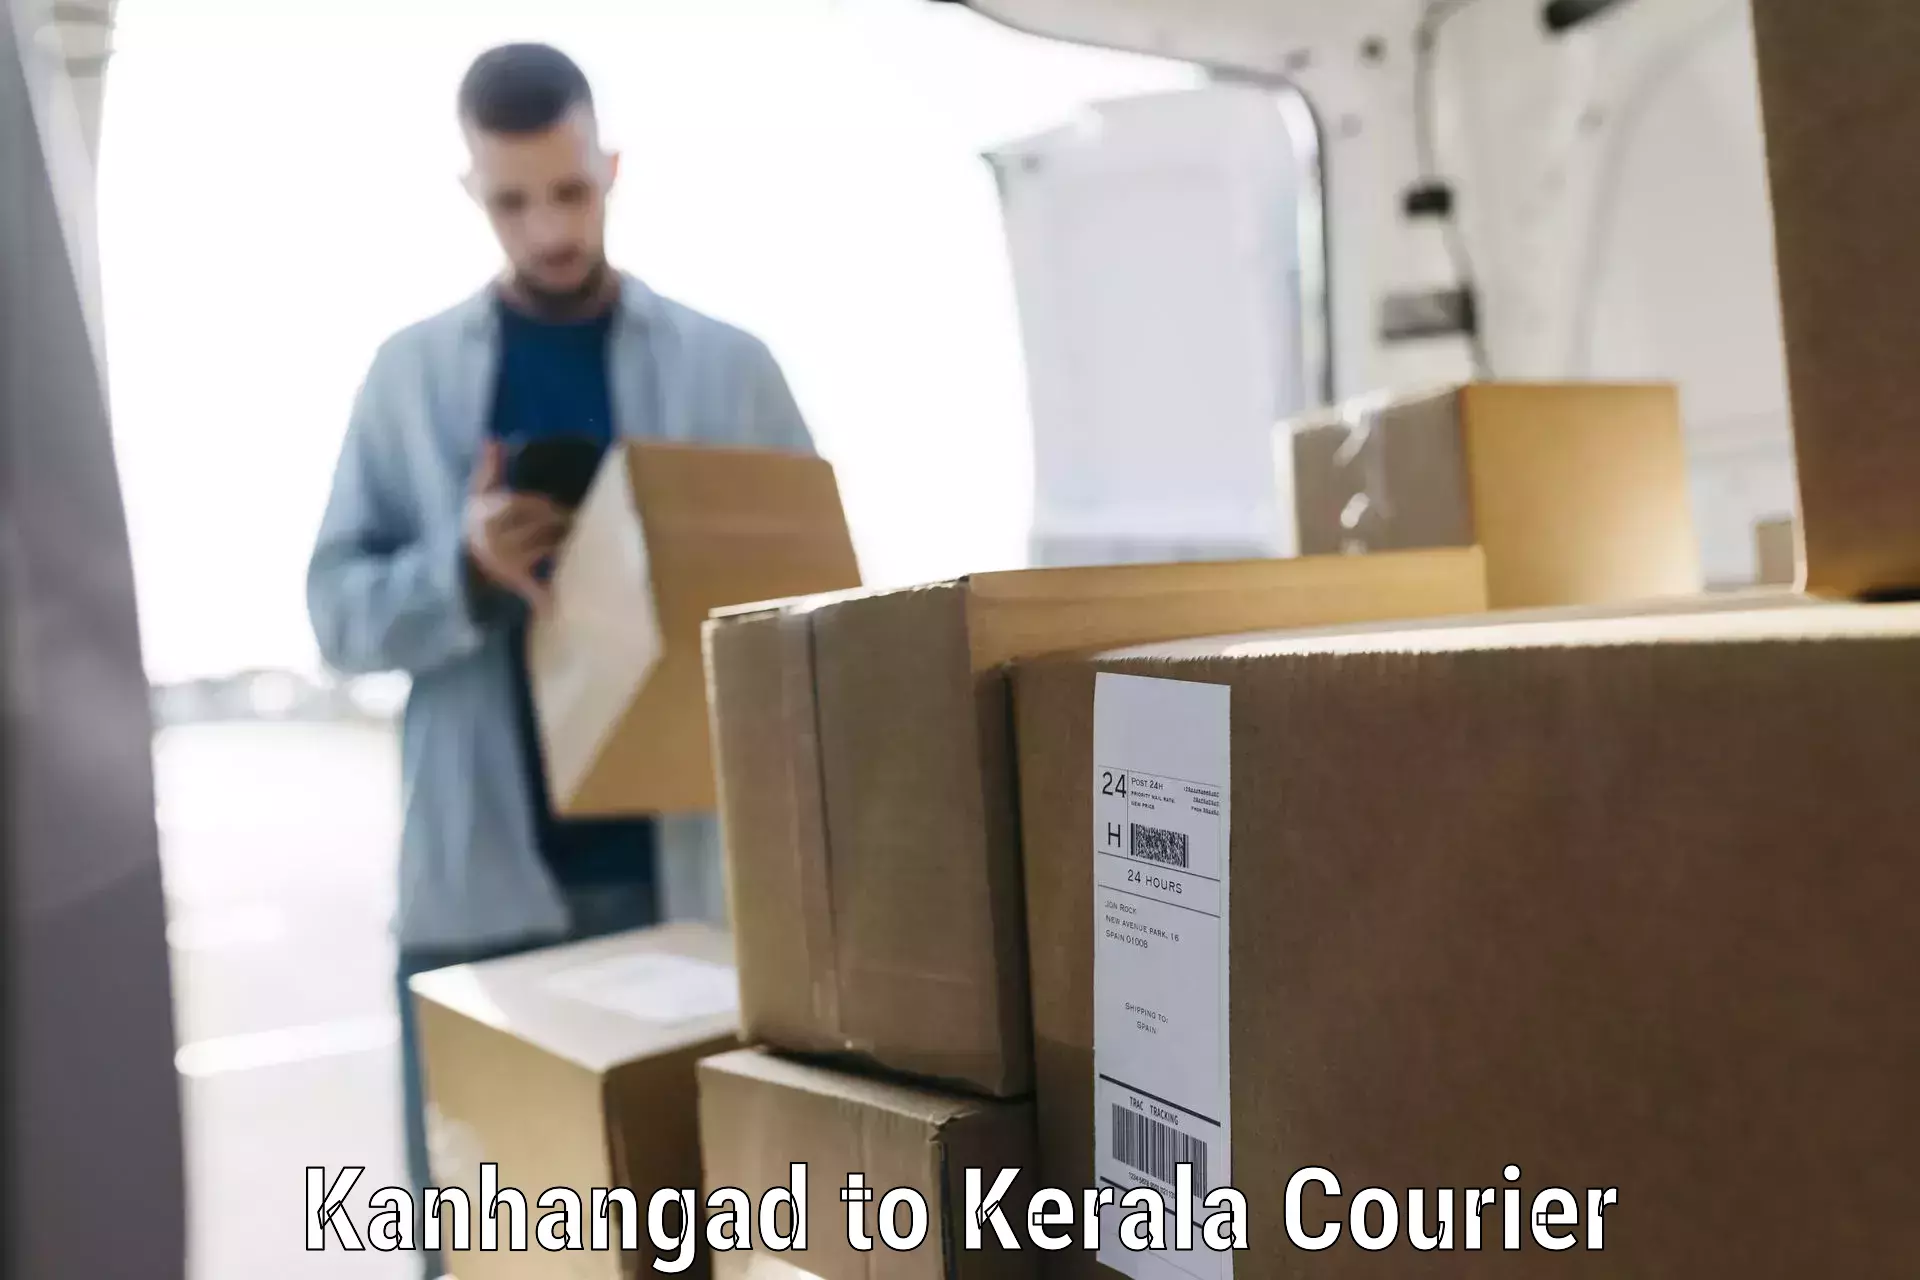 Baggage shipping experts in Kanhangad to Kalpetta